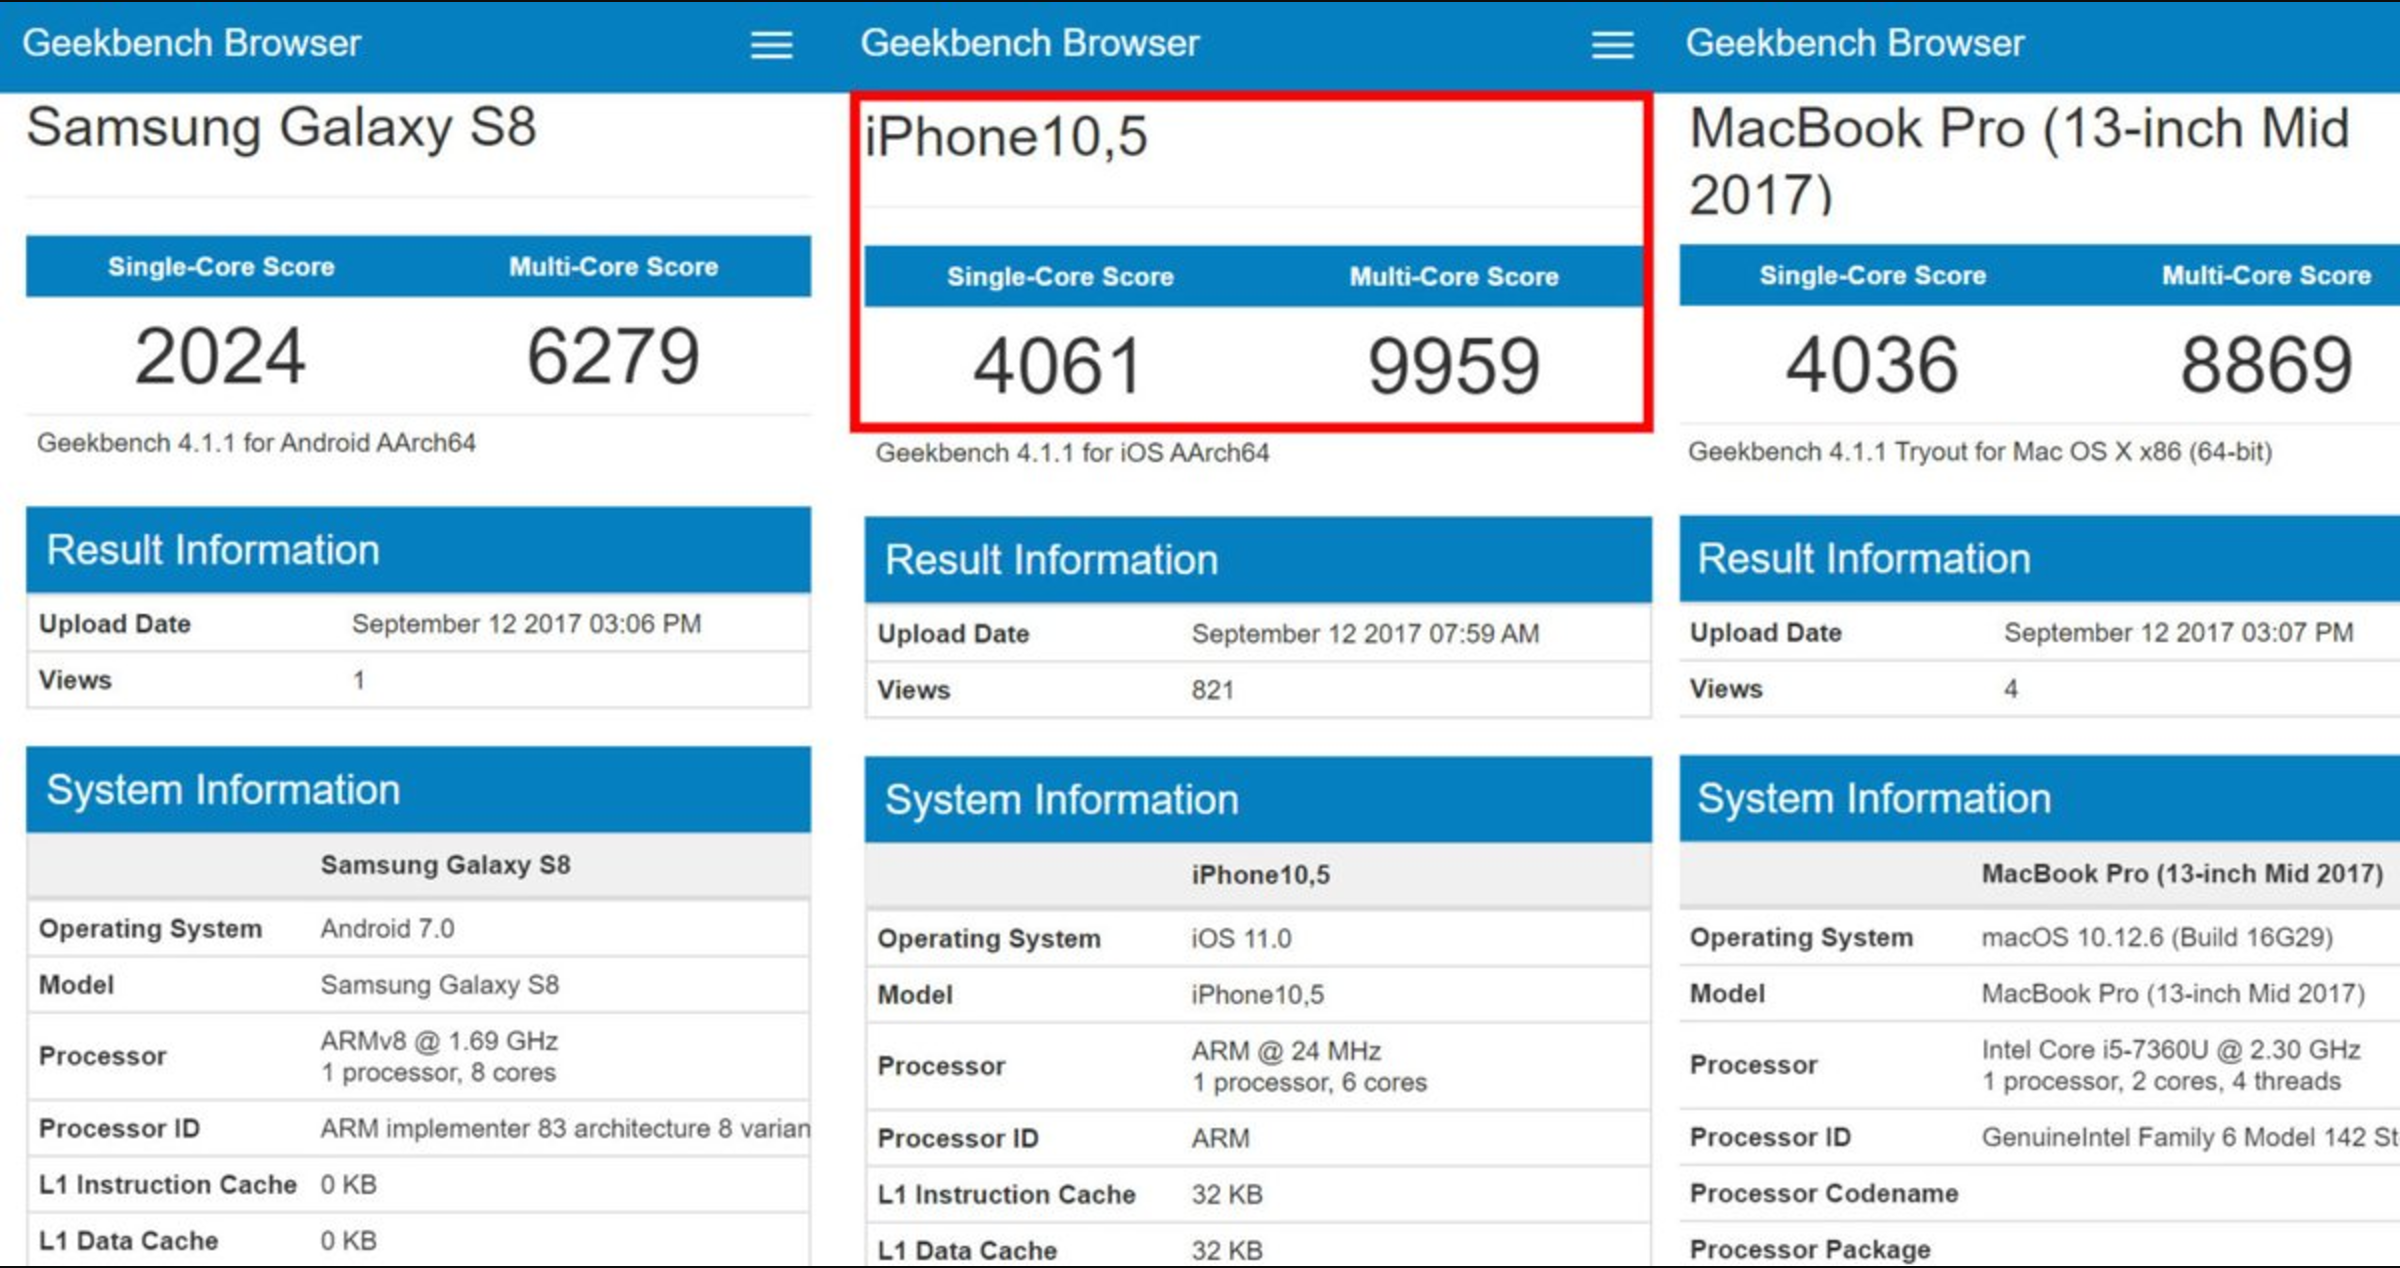 ชิป Apple A11 บน iPhone 8 เร็วกว่า Macbook Pro ที่ใช้ Intel Core i5-7360U เสียอีก